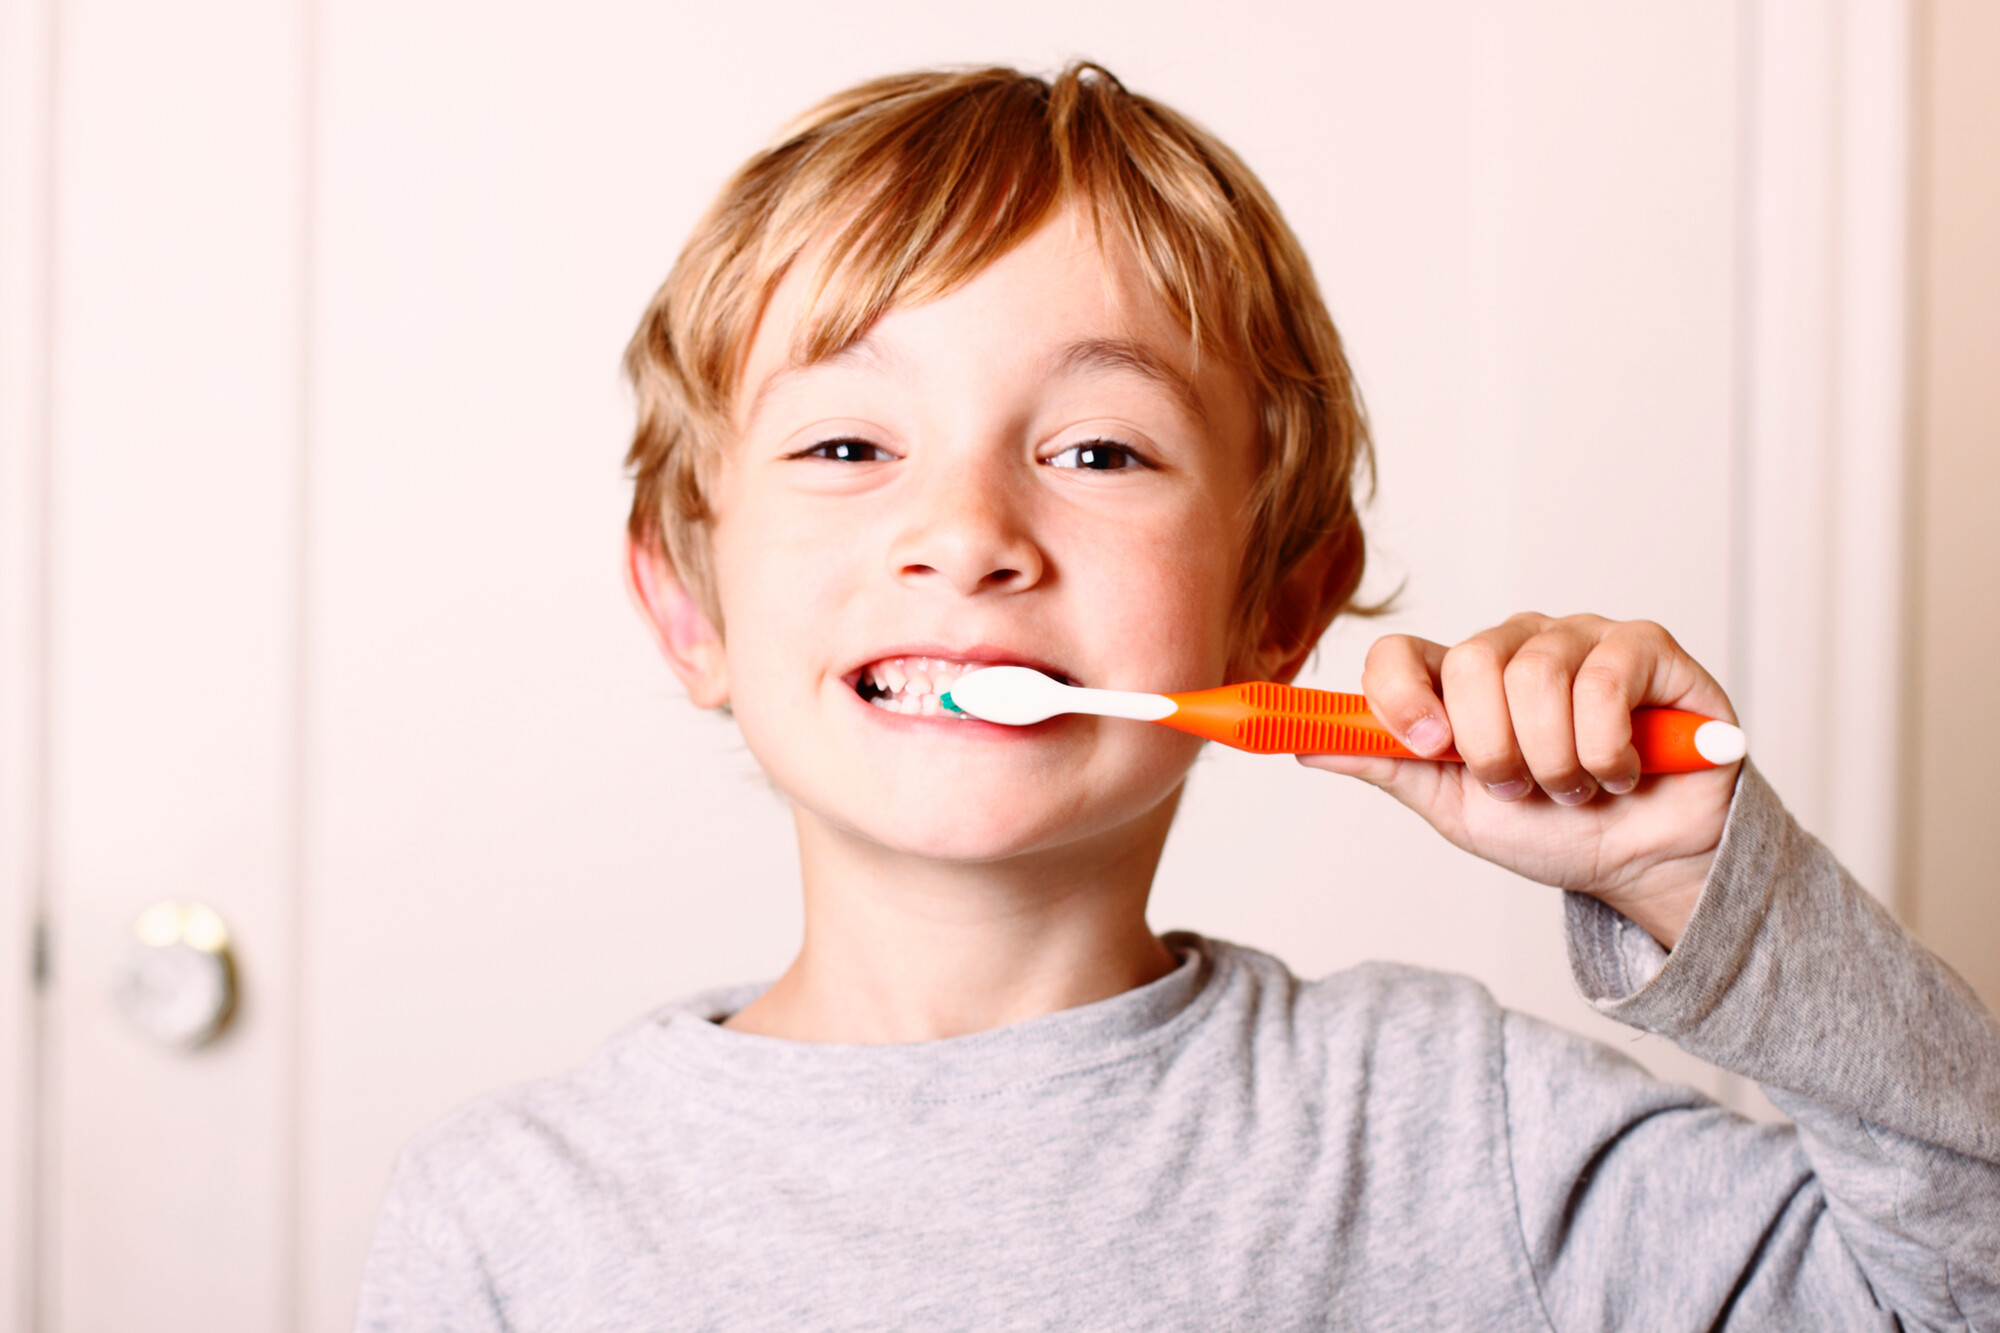 Unsere Zähne zermahlen im Laufe des Lebens etwa 60 Tonnen Lebensmittel. Bröckeln sie, werden sie rau, gelblich-grau, flach oder brüchig, so sind das nicht immer nur Zeichen mangelnder Mundhygiene oder altersbedingter "Abnutzungserscheinungen", sondern auch Anzeichen für Erkrankungen.